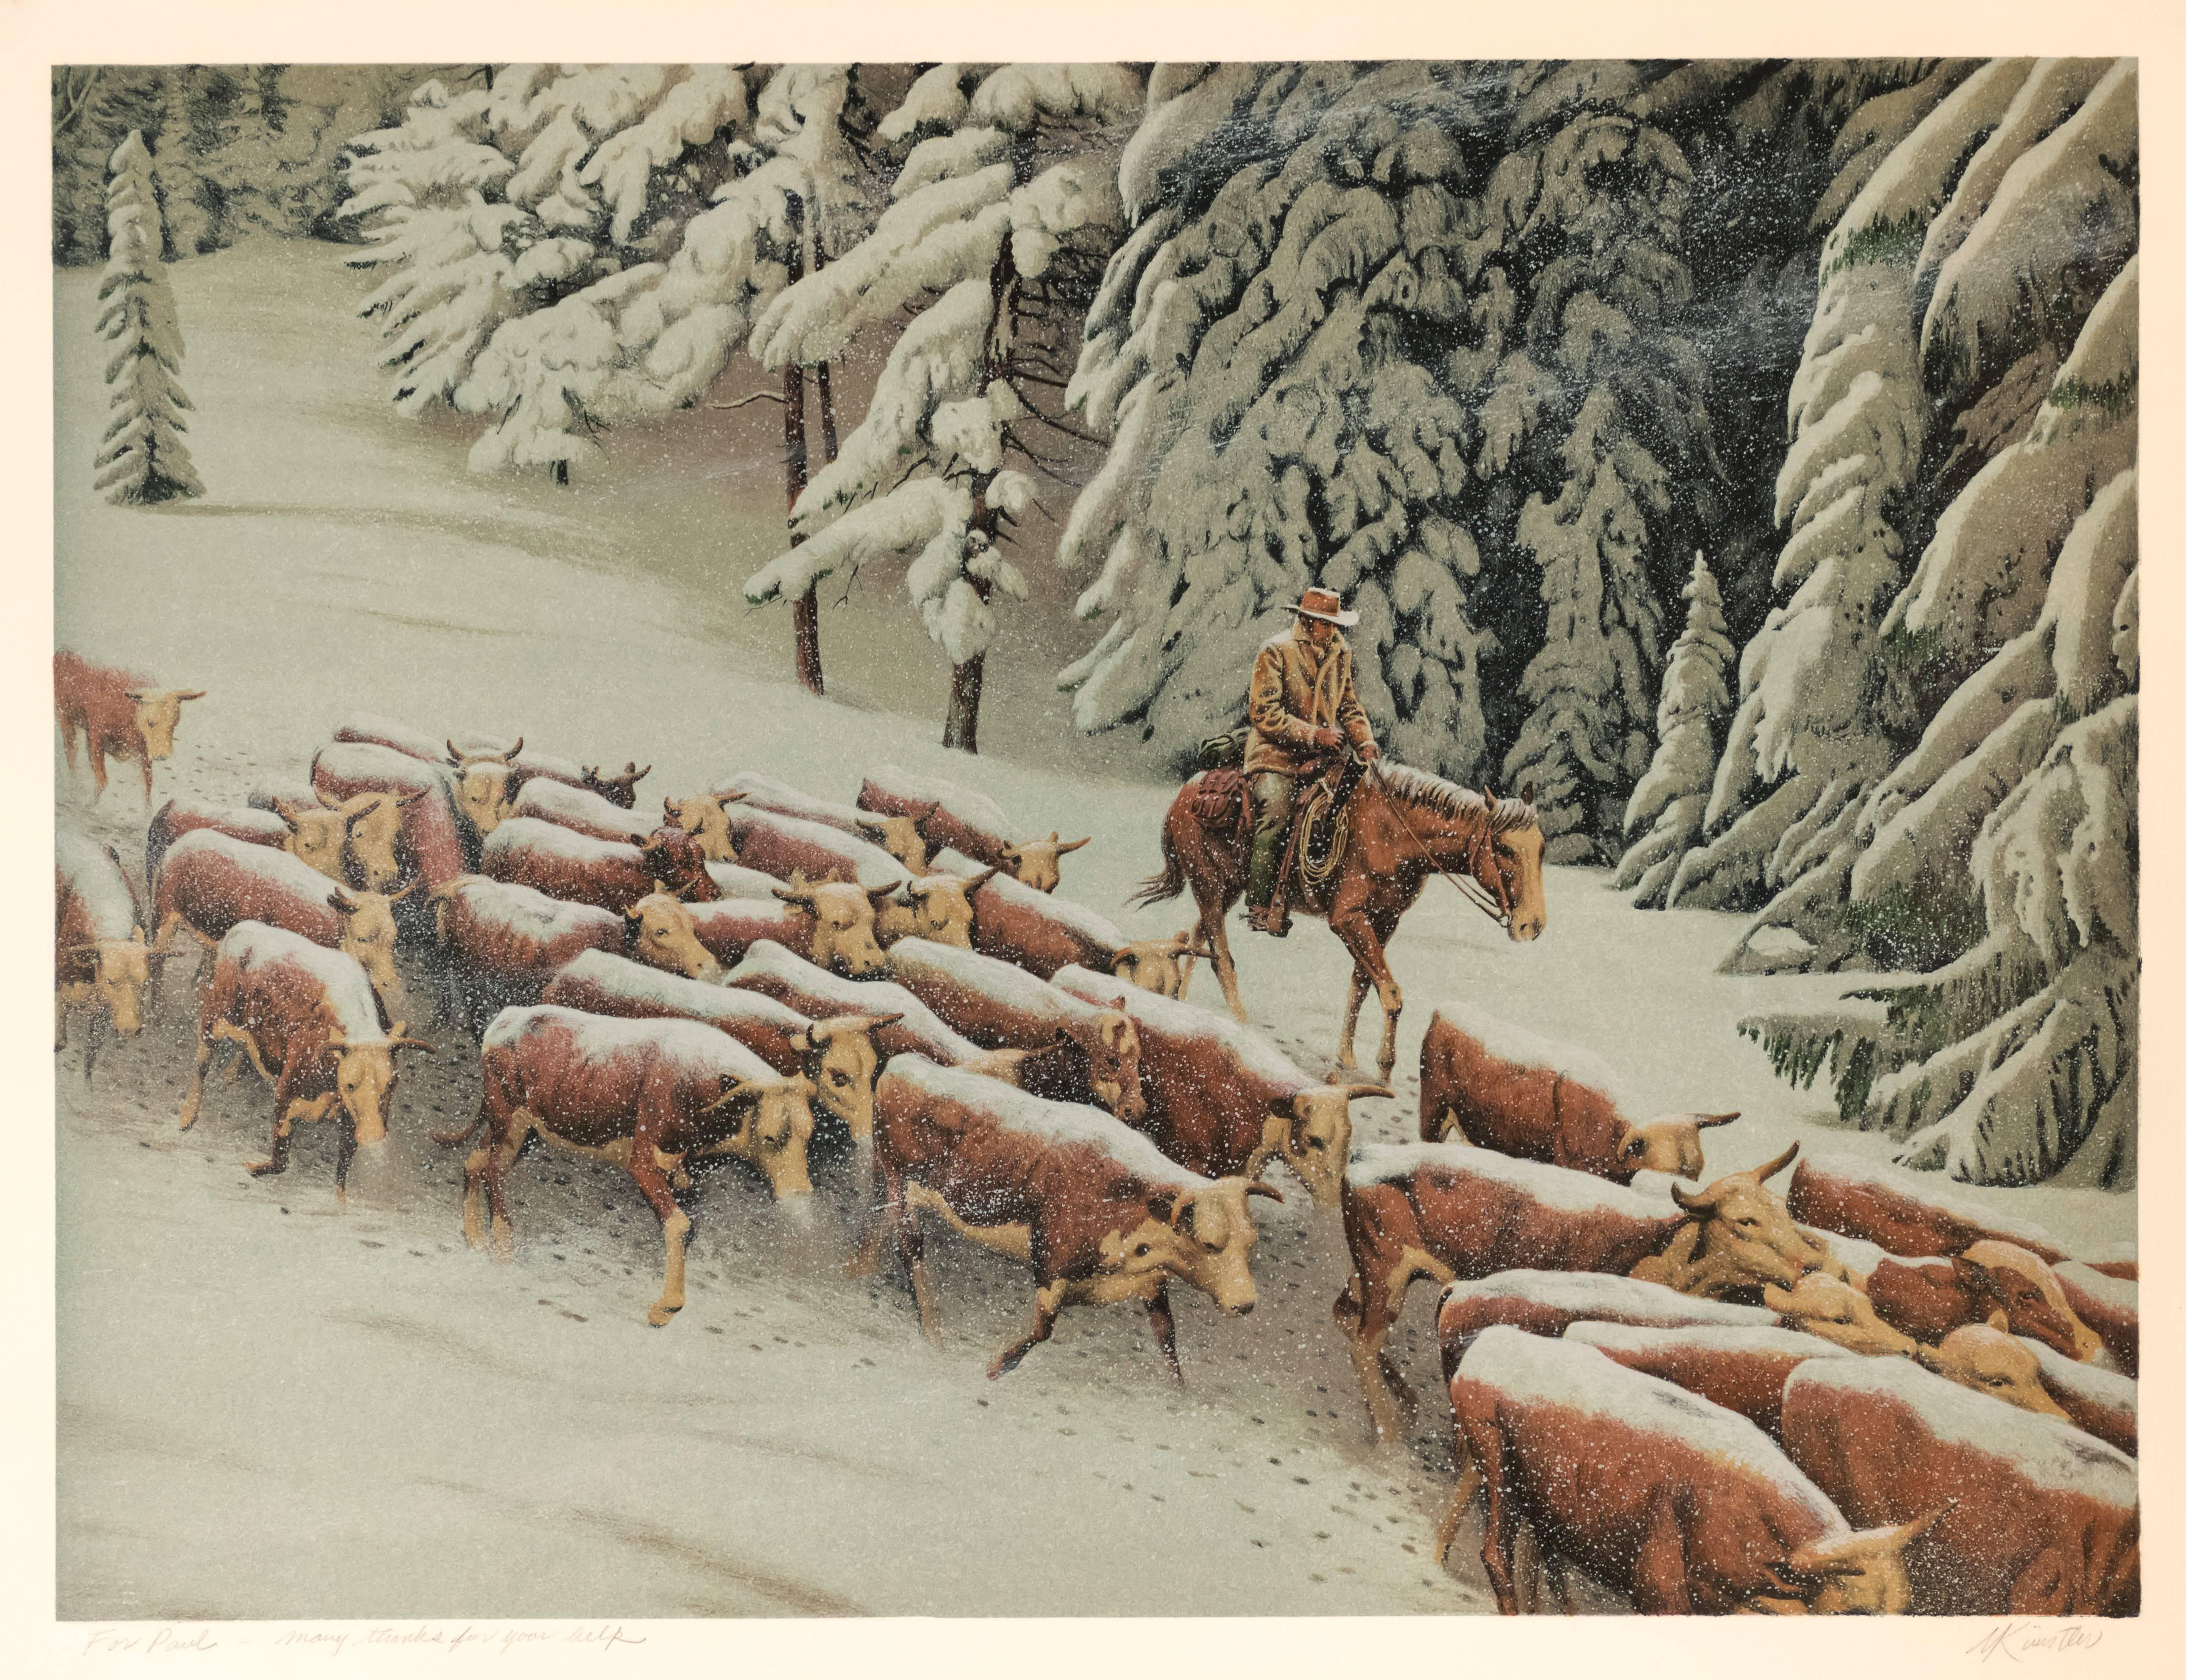 Mort Künstler Landscape Print - Cattle Drive in Winter